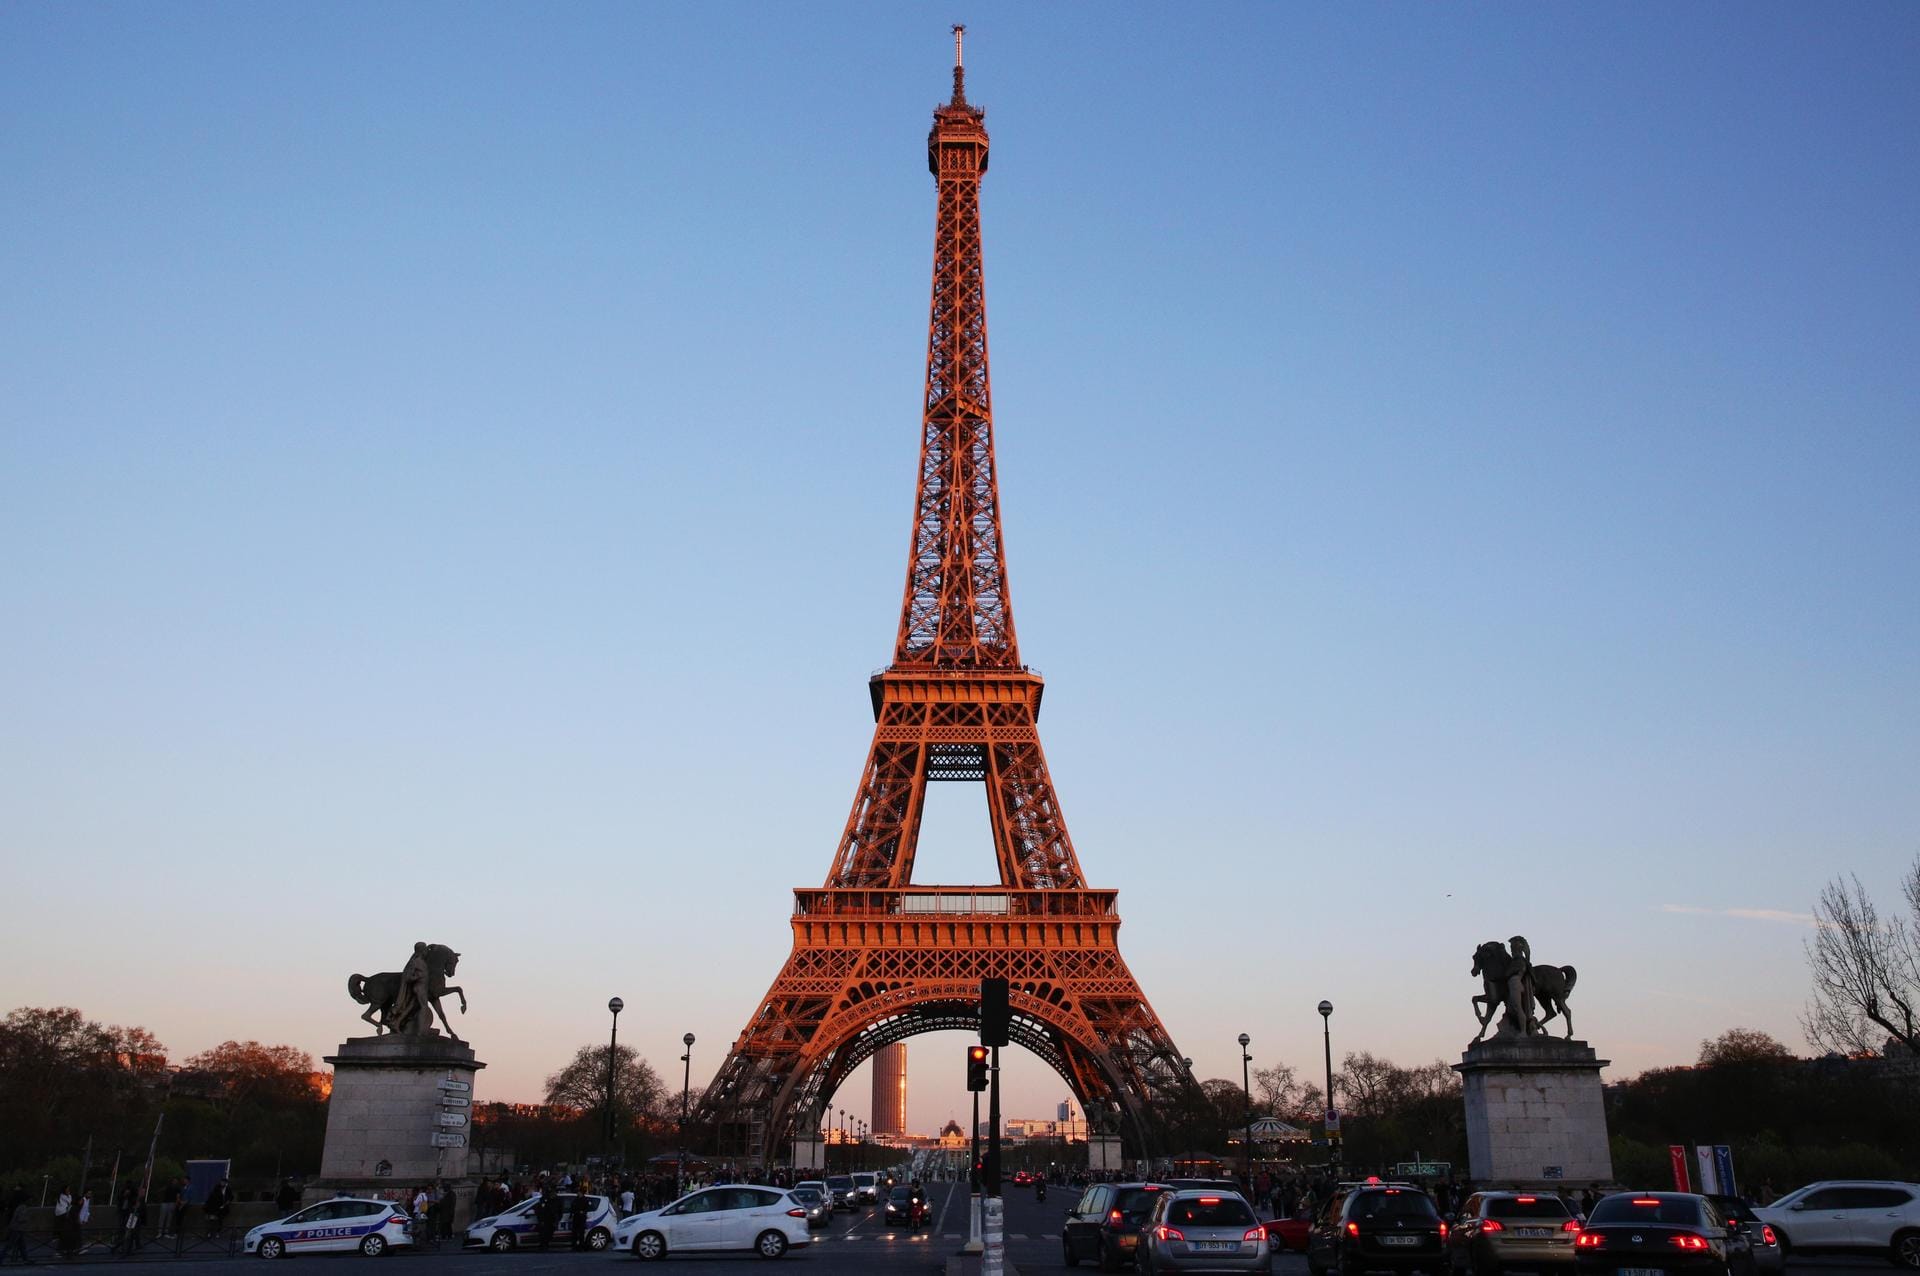 Der Eiffelturm vor blauem Himmel: Das Eisenbauwerk ist 300 Meter hoch und steht am Ufer der Seine.